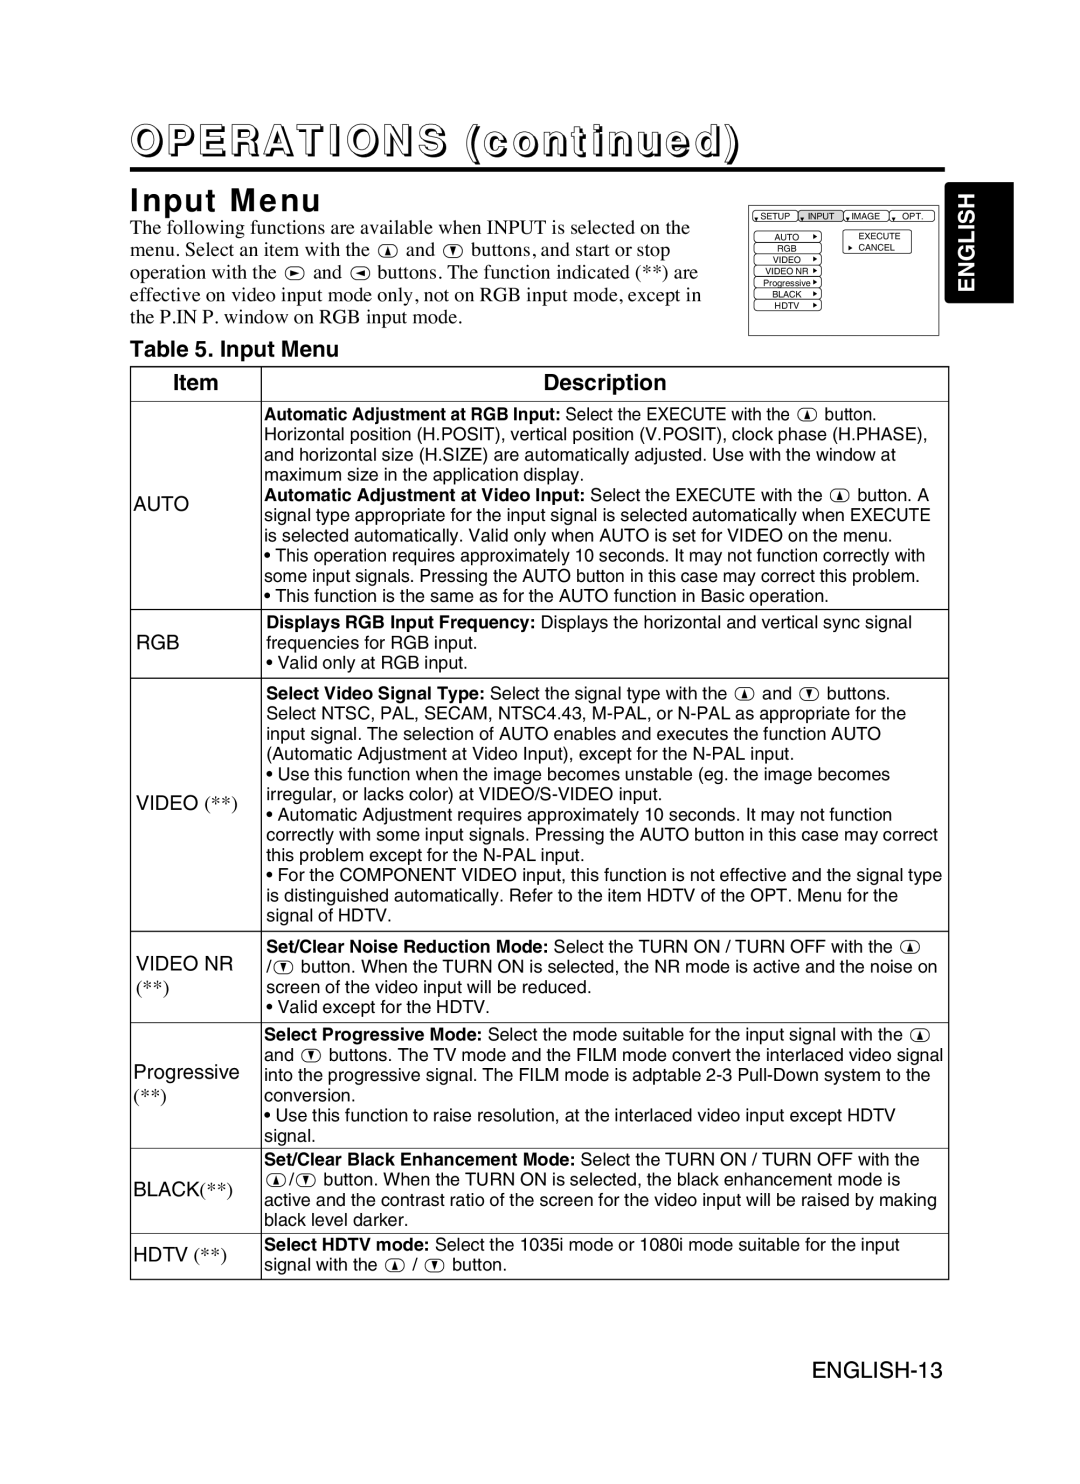 Proxima ASA DP6870 manual Input Menu, OPERATIONS continued, English, Description 